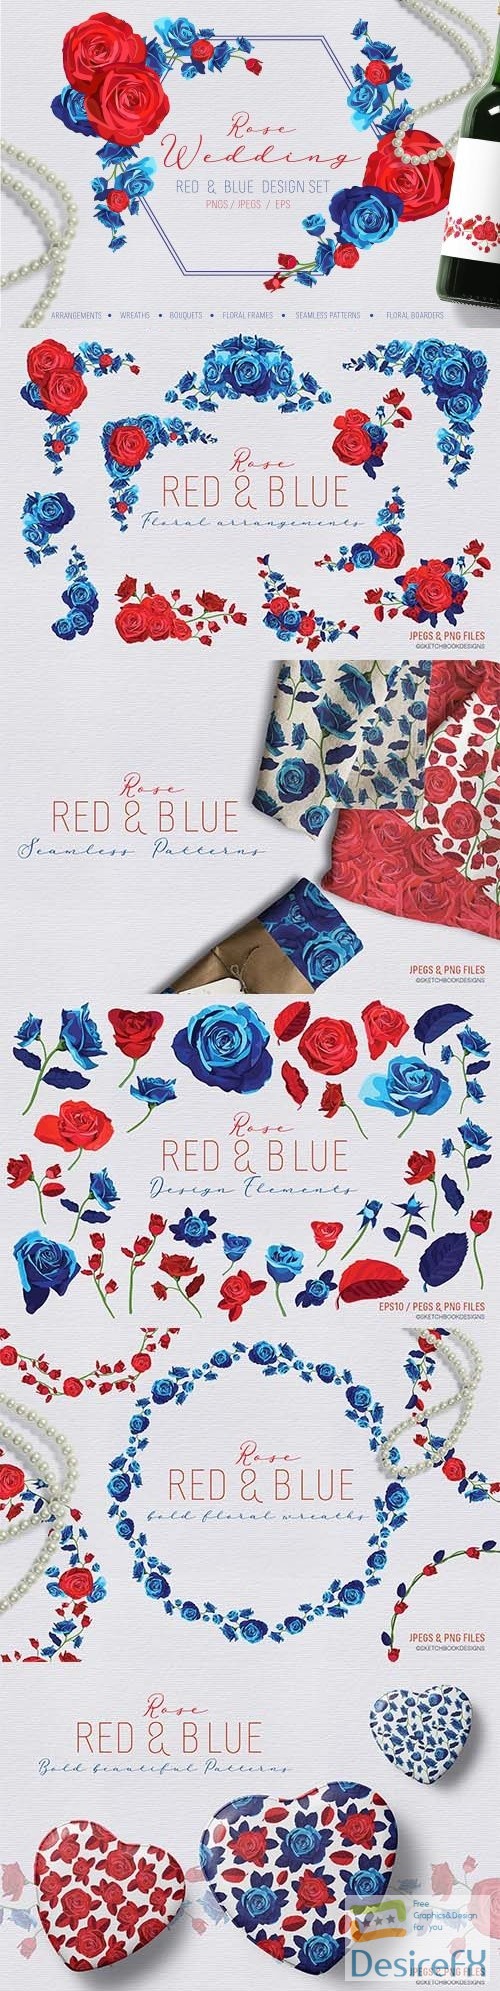 Rose Wedding Red and Blue Design Set - 2897785